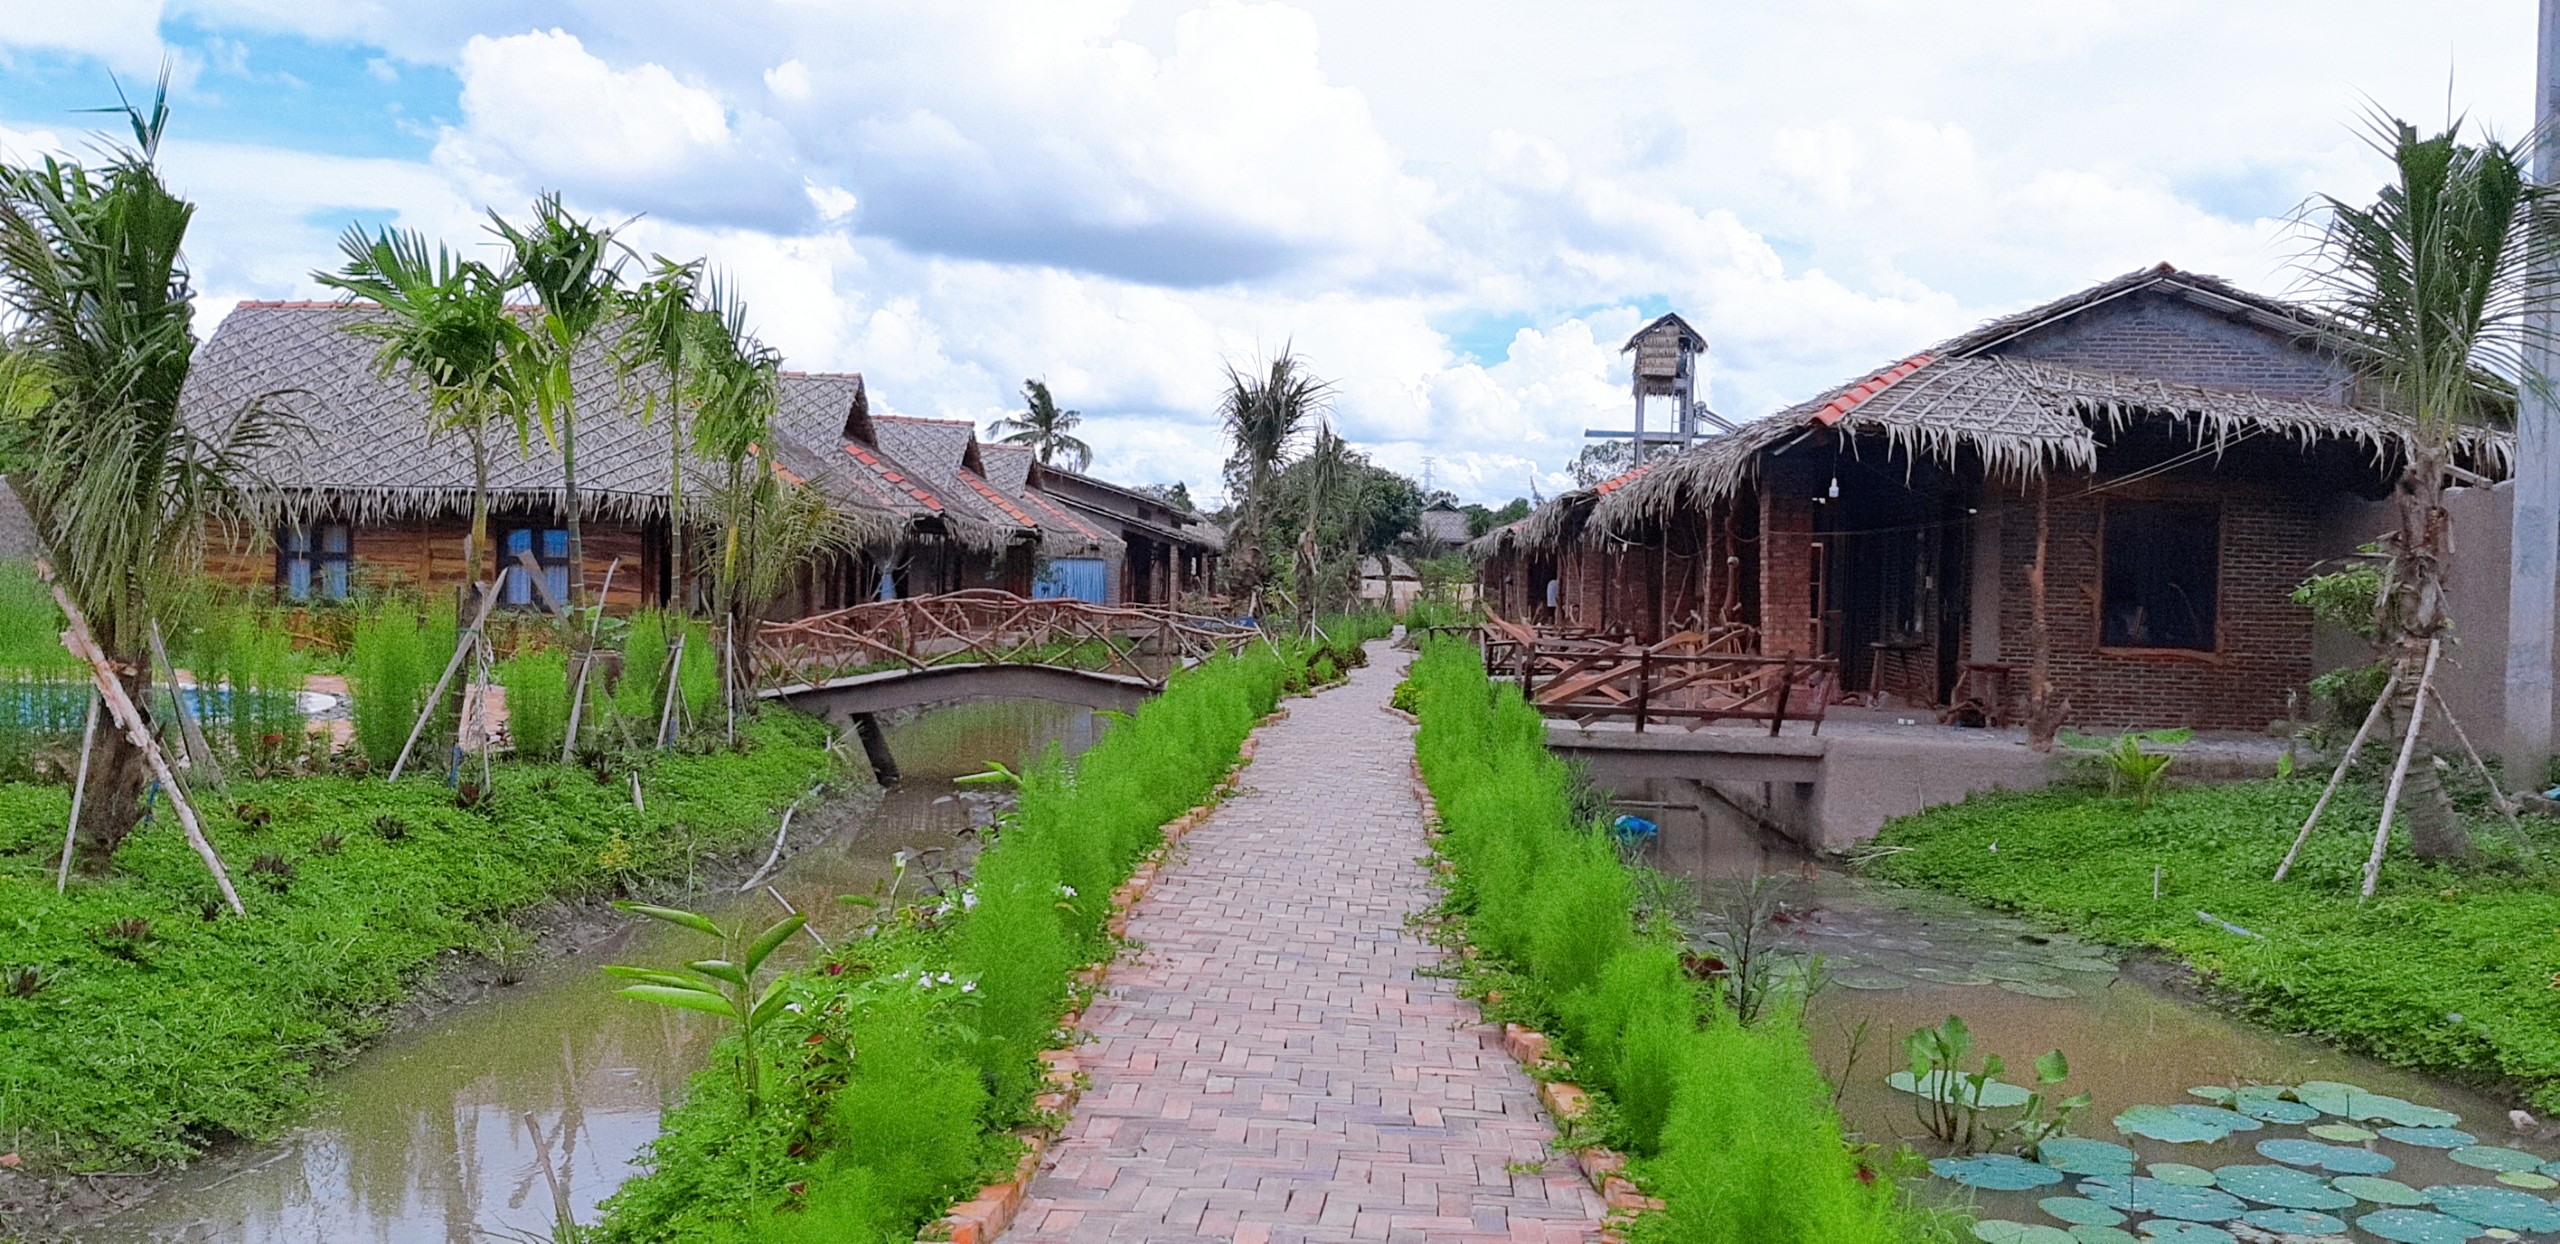 Khu nghỉ dưỡng Mekong Silt Ecolodge – nơi có phong cảnh quê tuyệt đẹp. -  Mekong Delta Explorer Travel